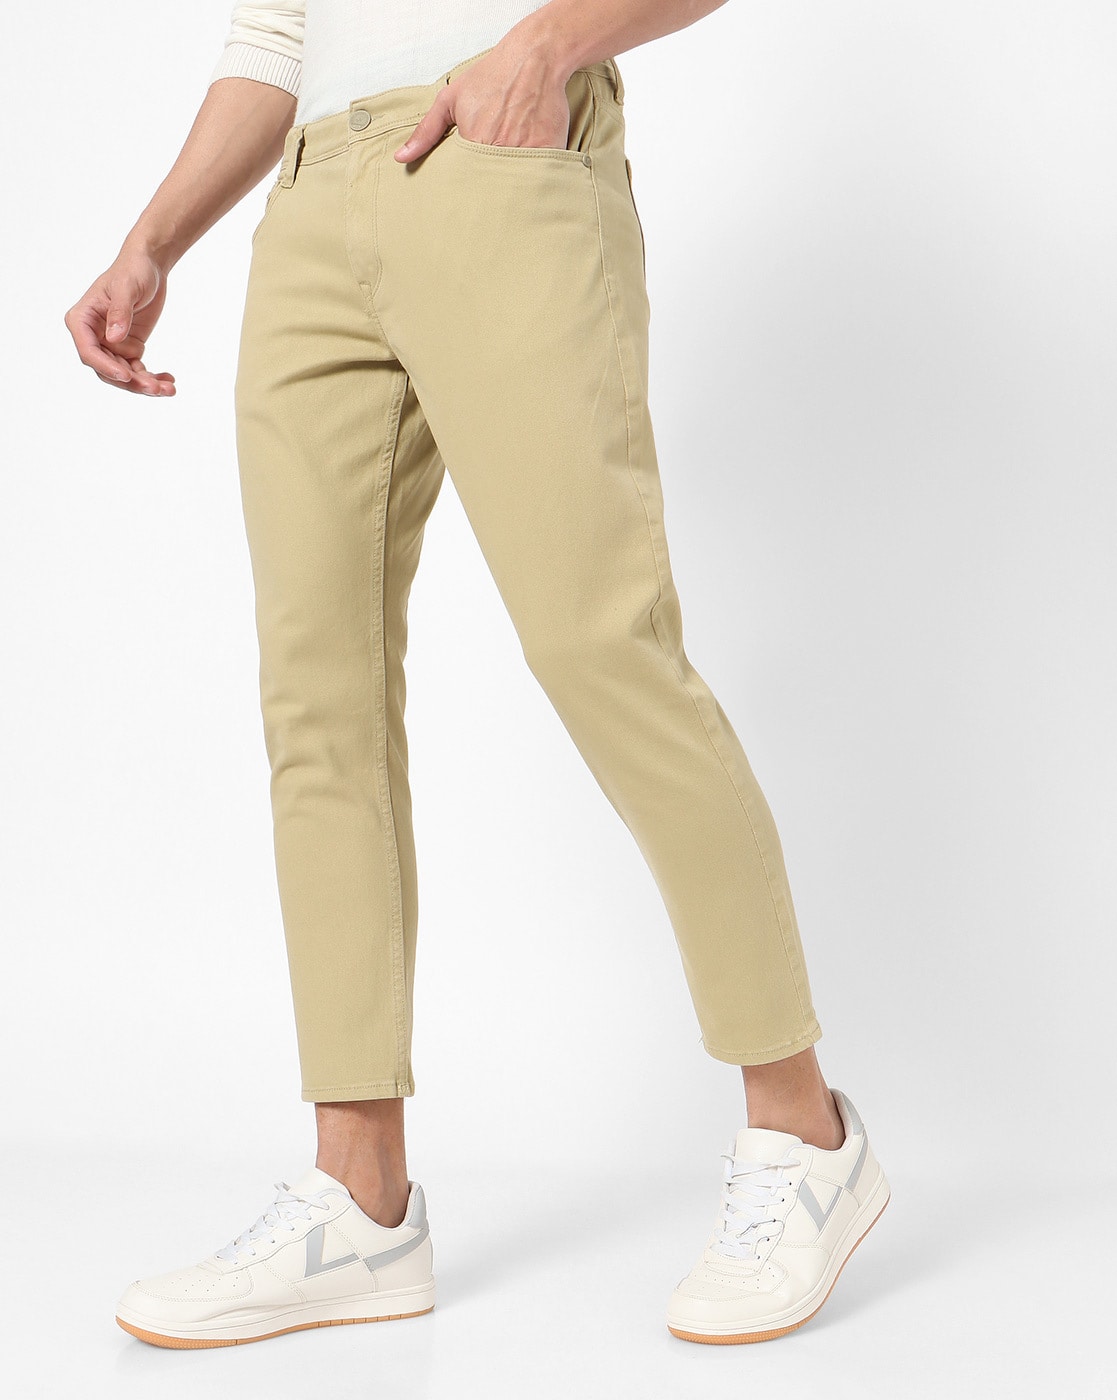 Buy Khaki Trousers  Pants for Men by ECKO UNLTD Online  Ajiocom